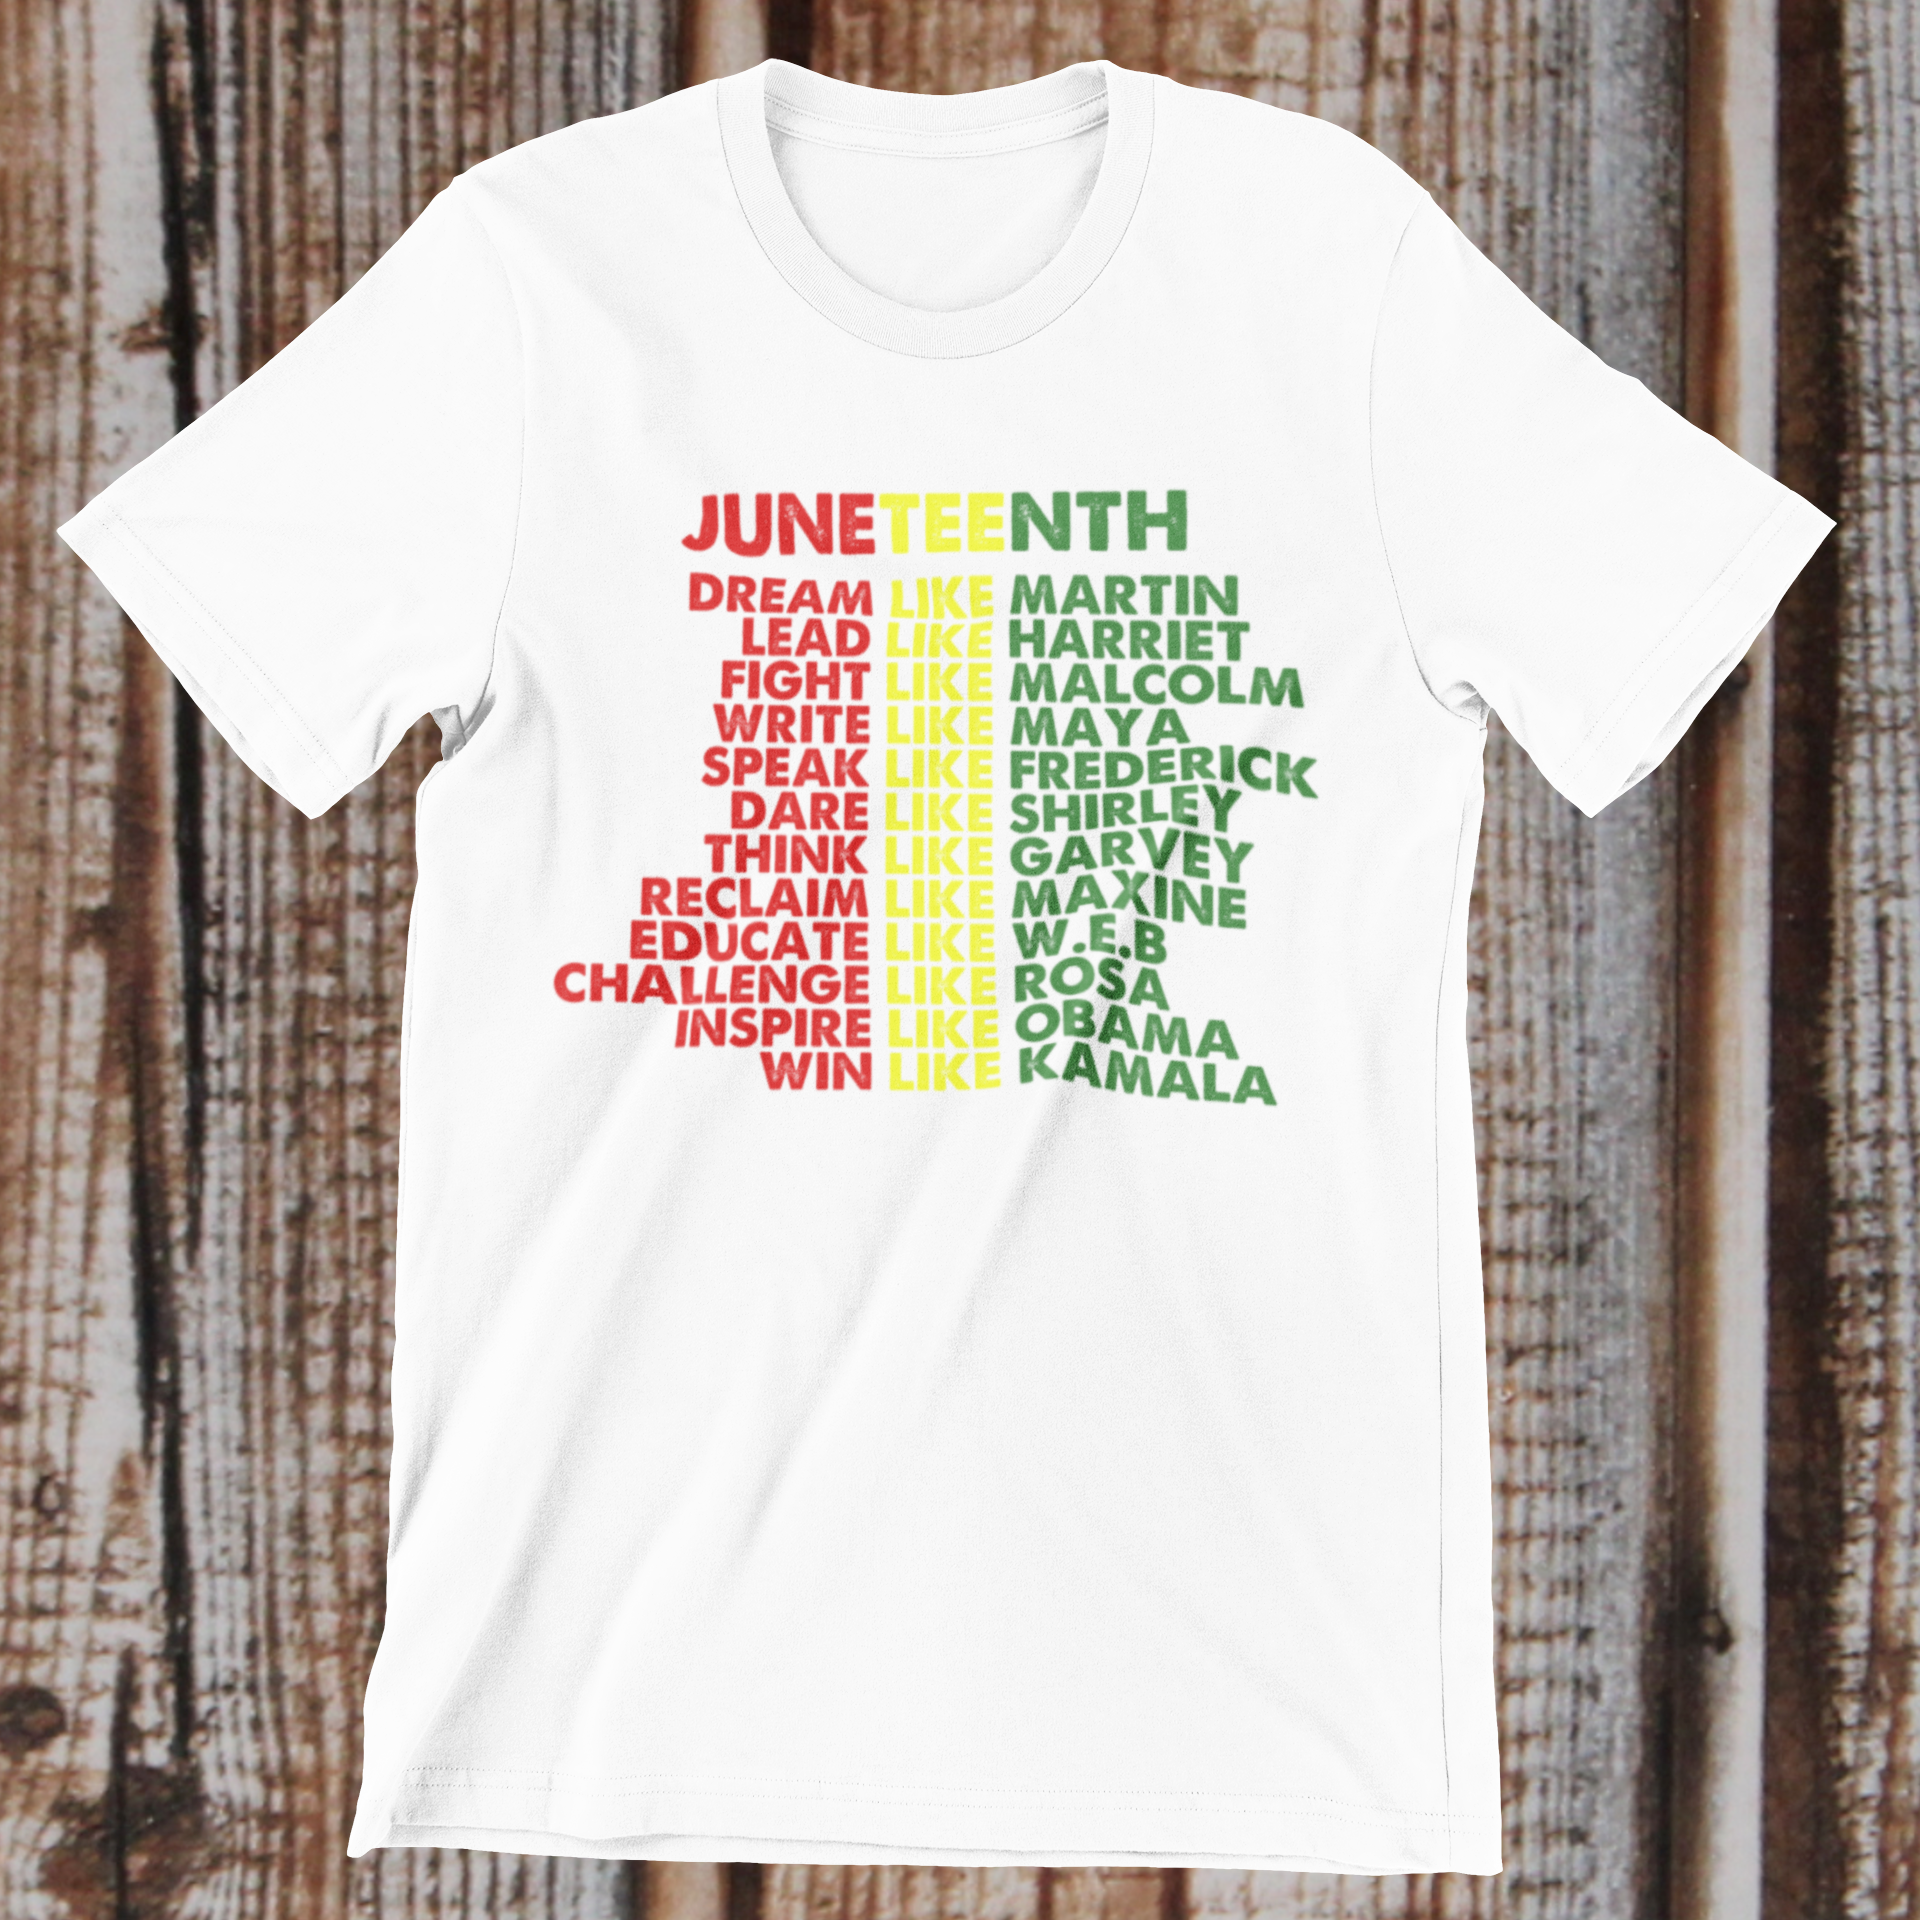 Juneteenth Tshirt, Juneteenth Shirt For Women Men Kids, Juneteenth